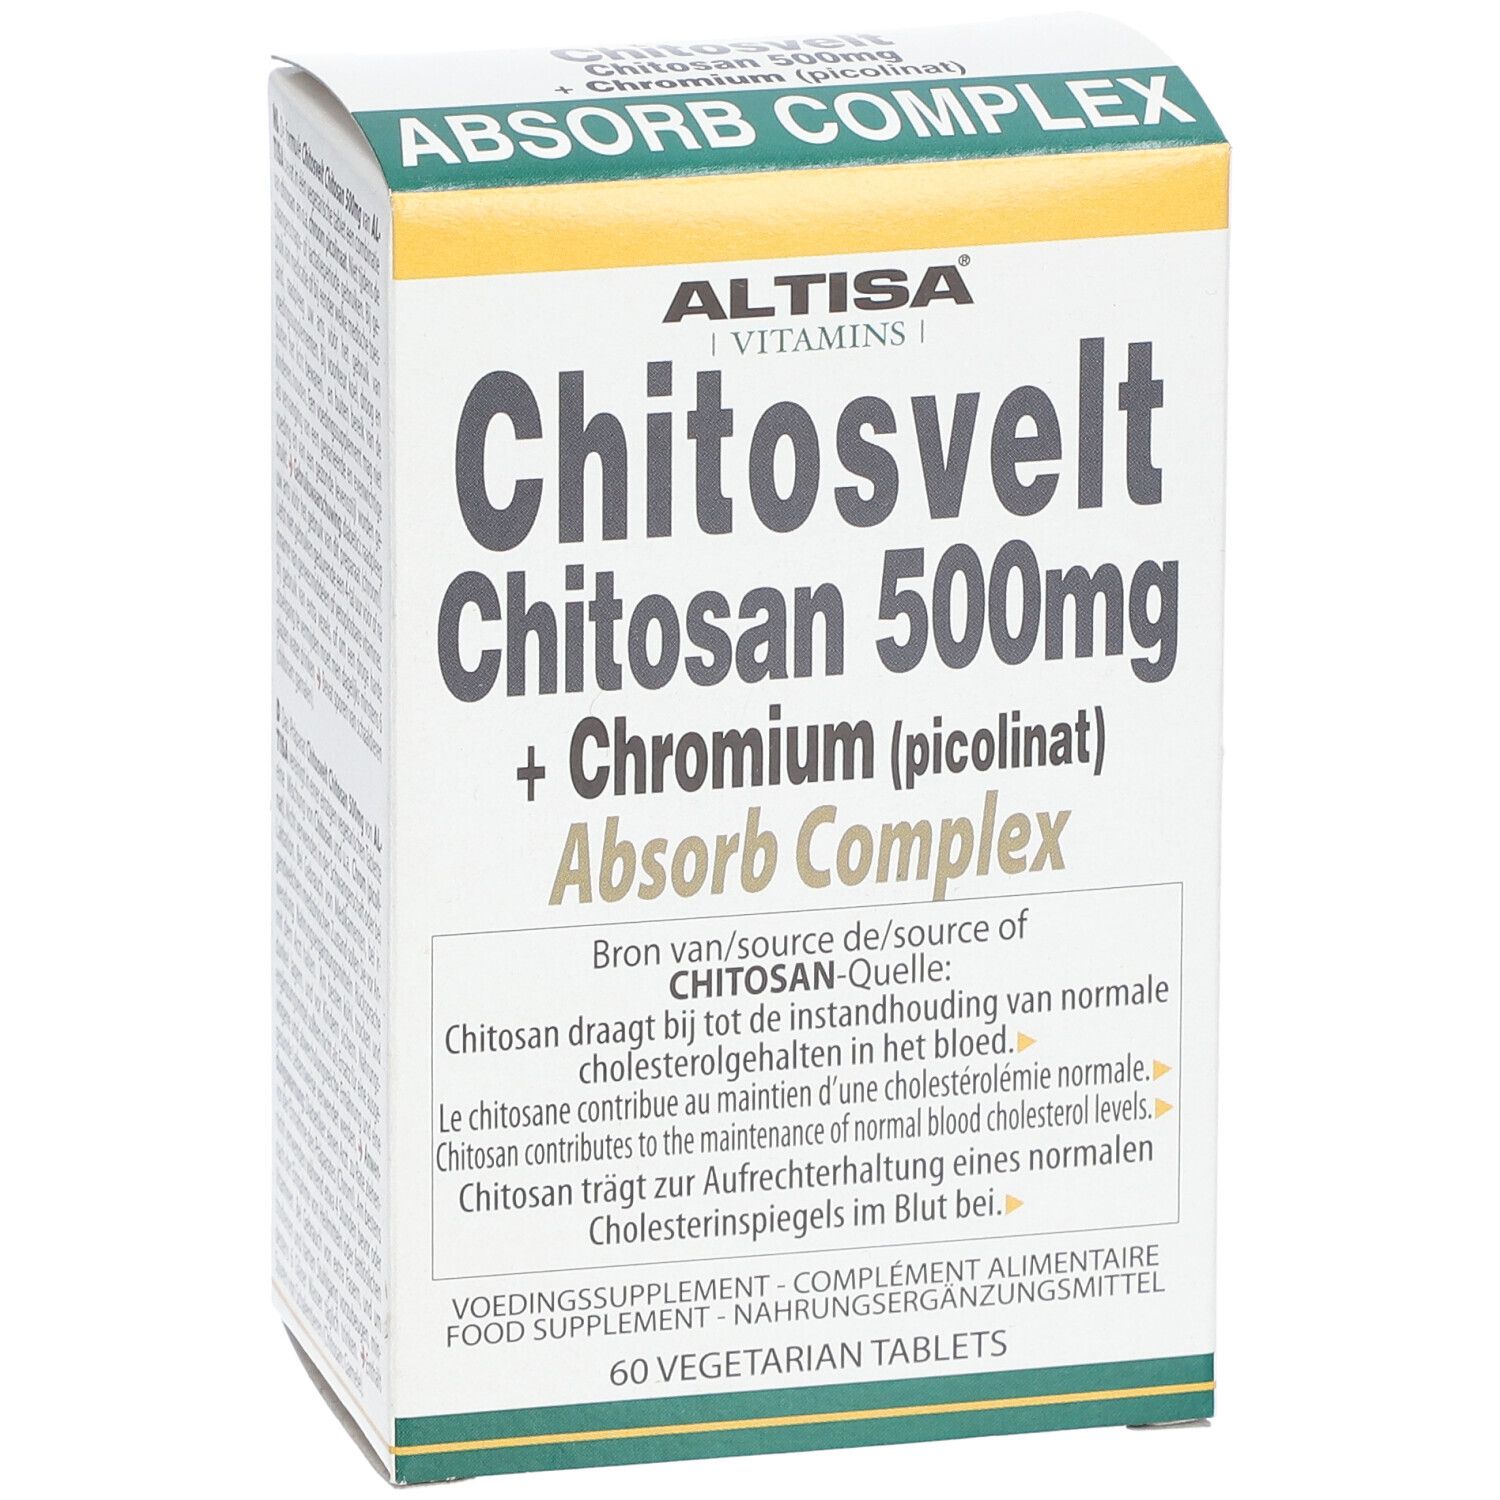 ALTISA® Chitosvelt Chitosan 500 mg + Chromium